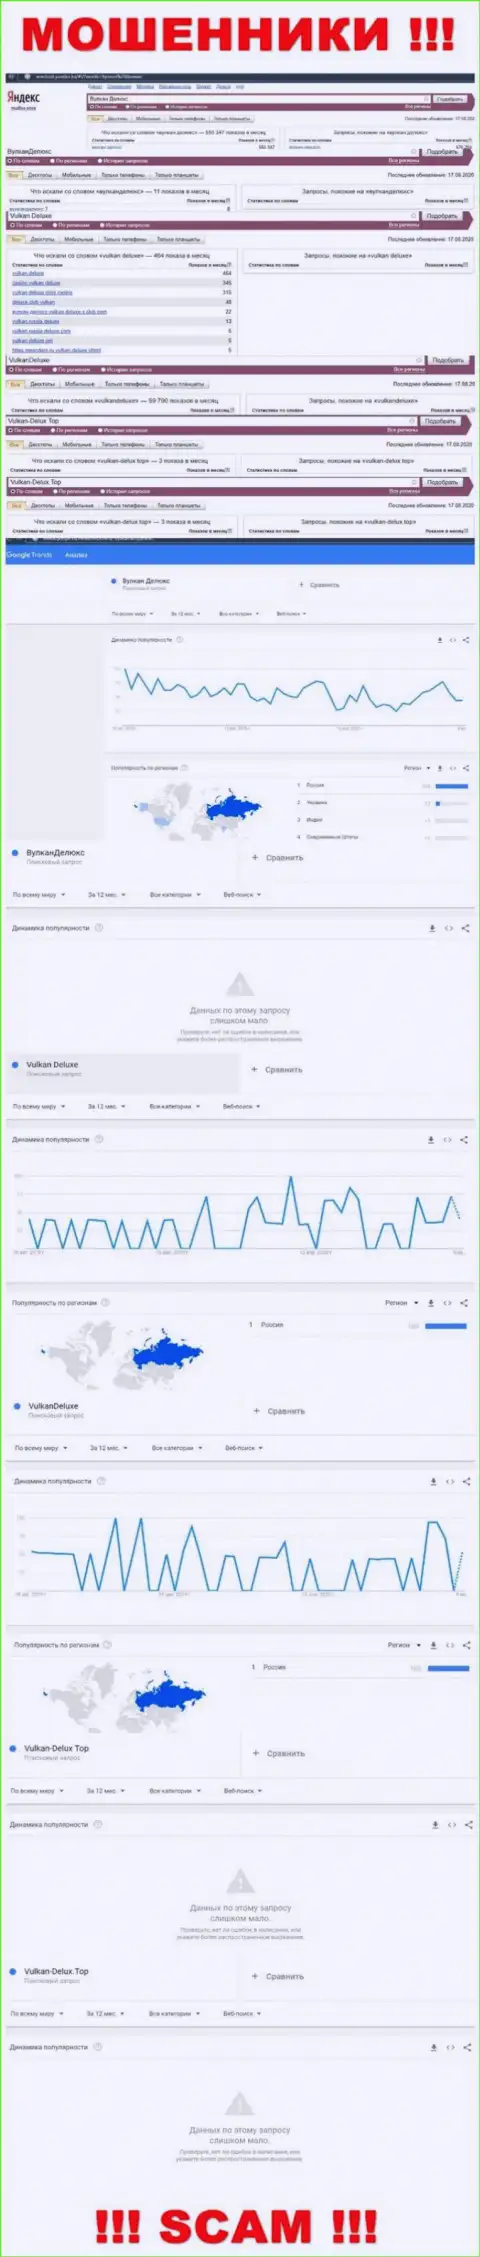 Показатели online запросов по мошенникам Vulkan-Delux Top в глобальной сети интернет